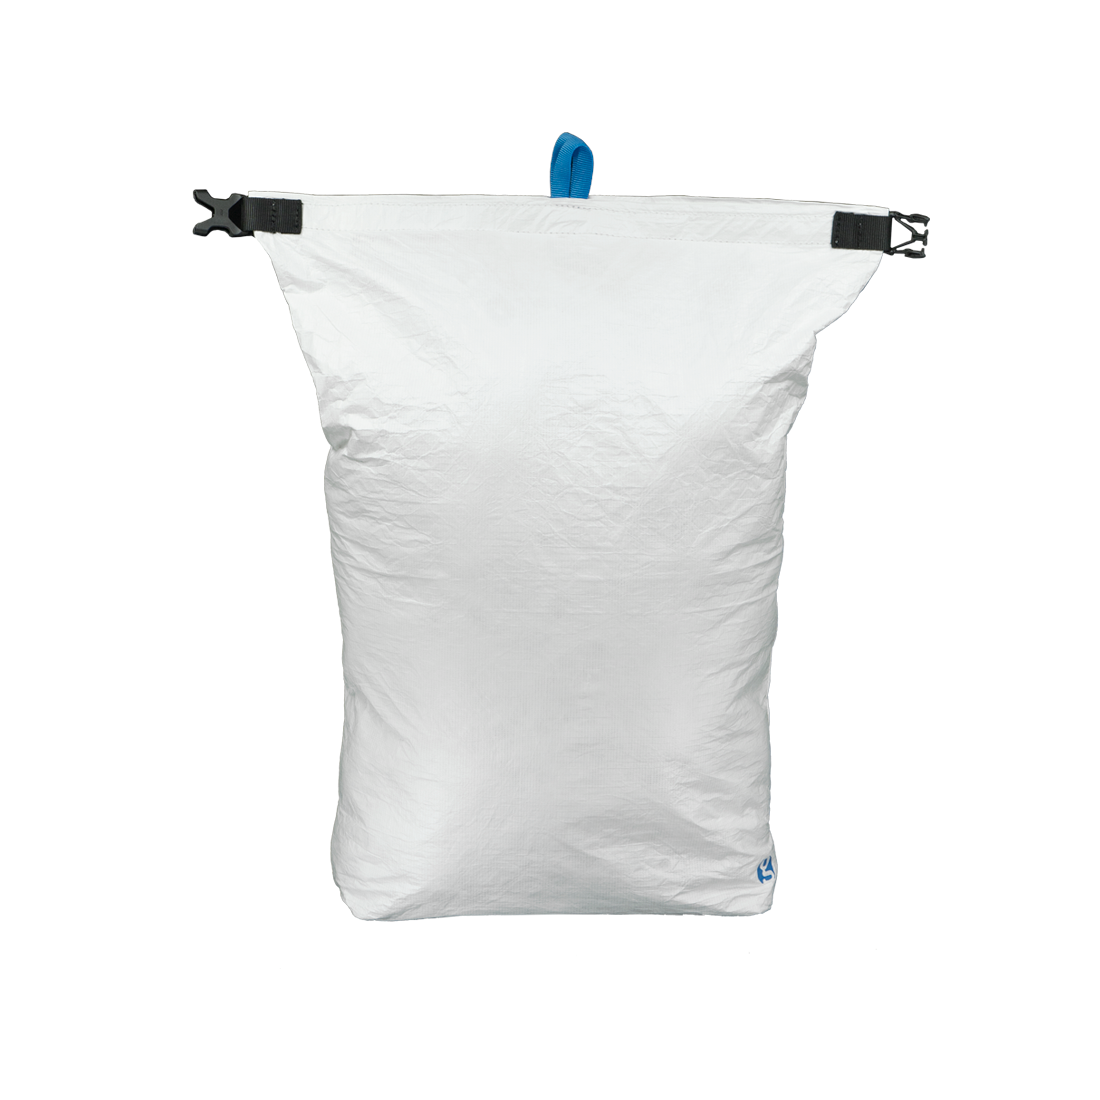 Wheat flour in burlap sack bag isolated on white background Stock Photo by  ©Jamakosy 530409812